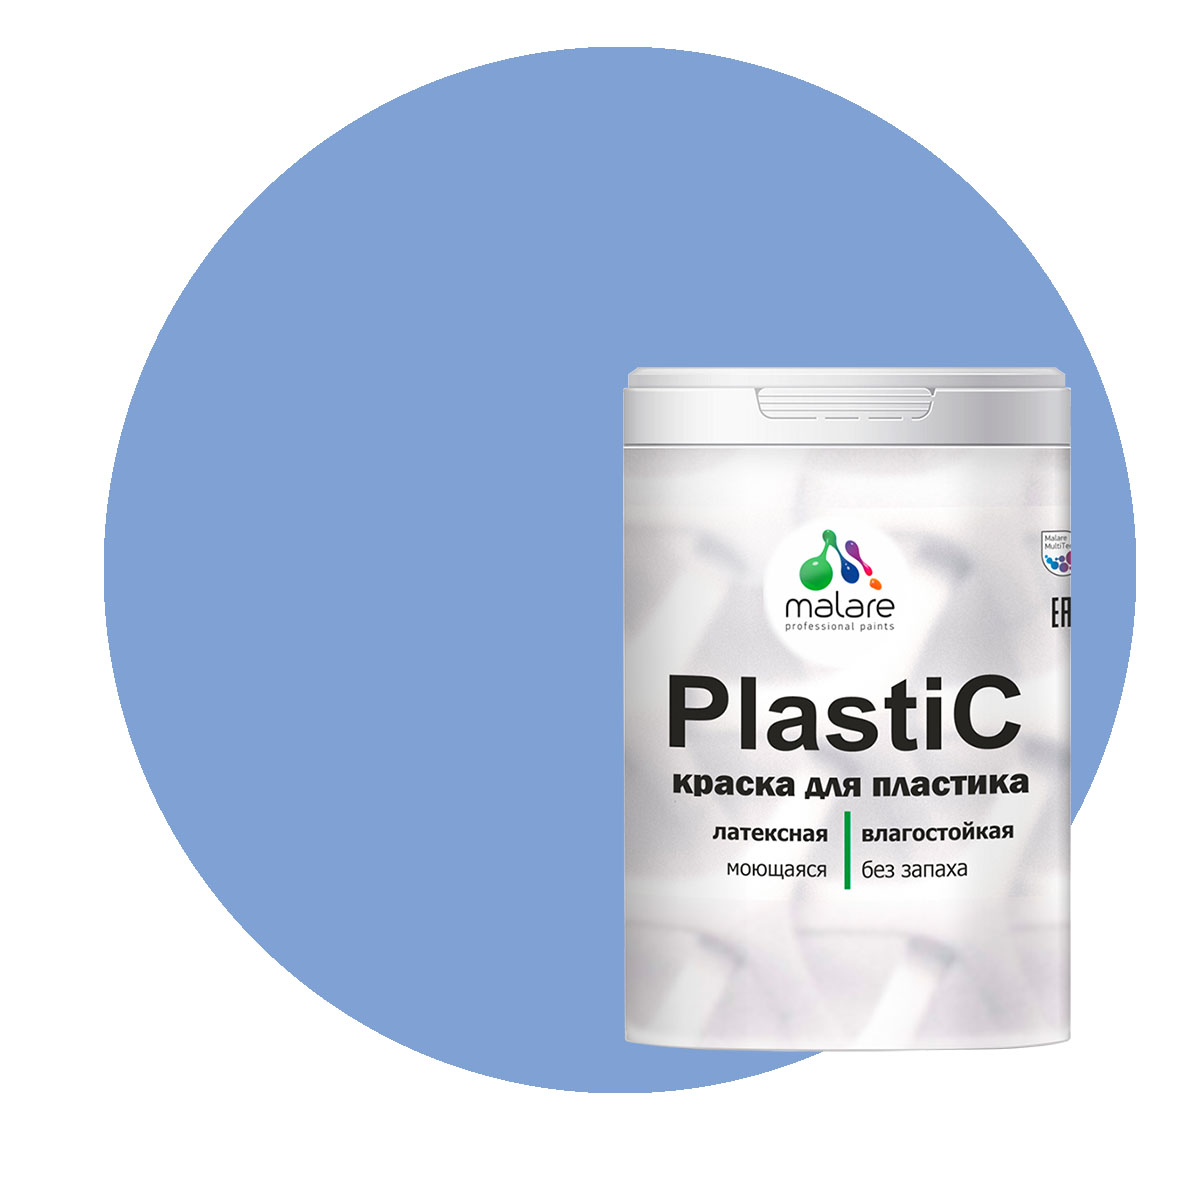 Краска Malare PlastiC для пластика, ПВХ, для сайдинга, стальной голубой 1 кг.